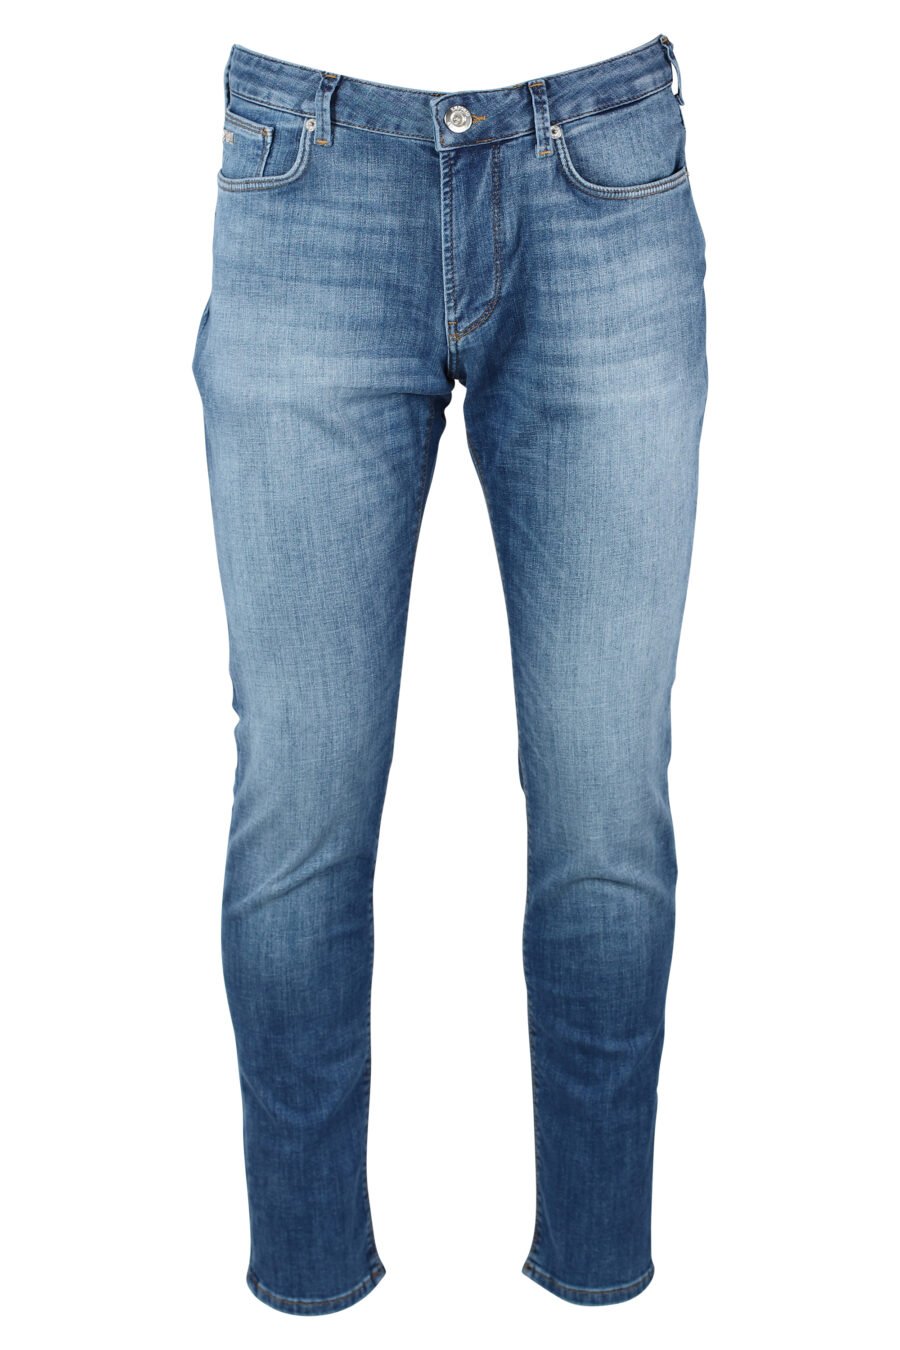 Emporio Armani - Pantalón vaquero azul con minilogo metal - BLS Fashion